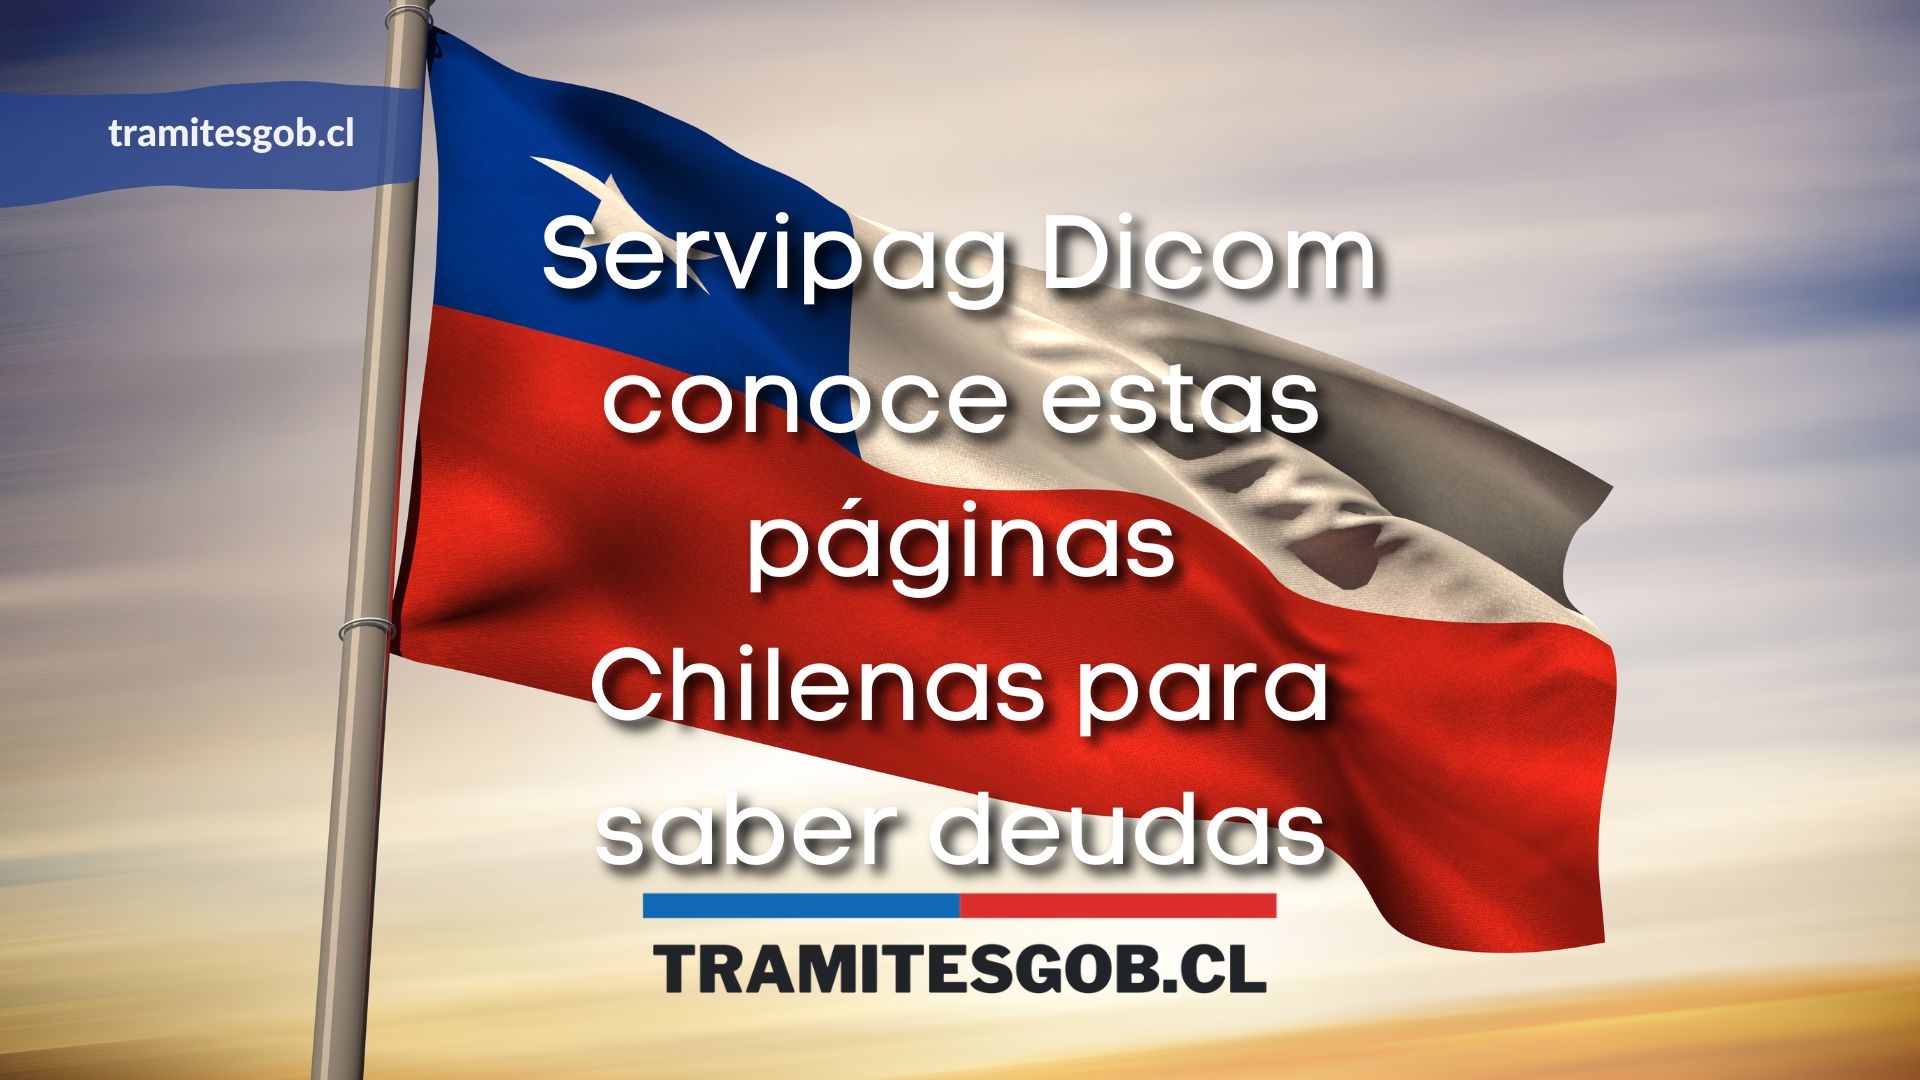 Servipag Dicom conoce estas páginas Chilenas para saber deudas